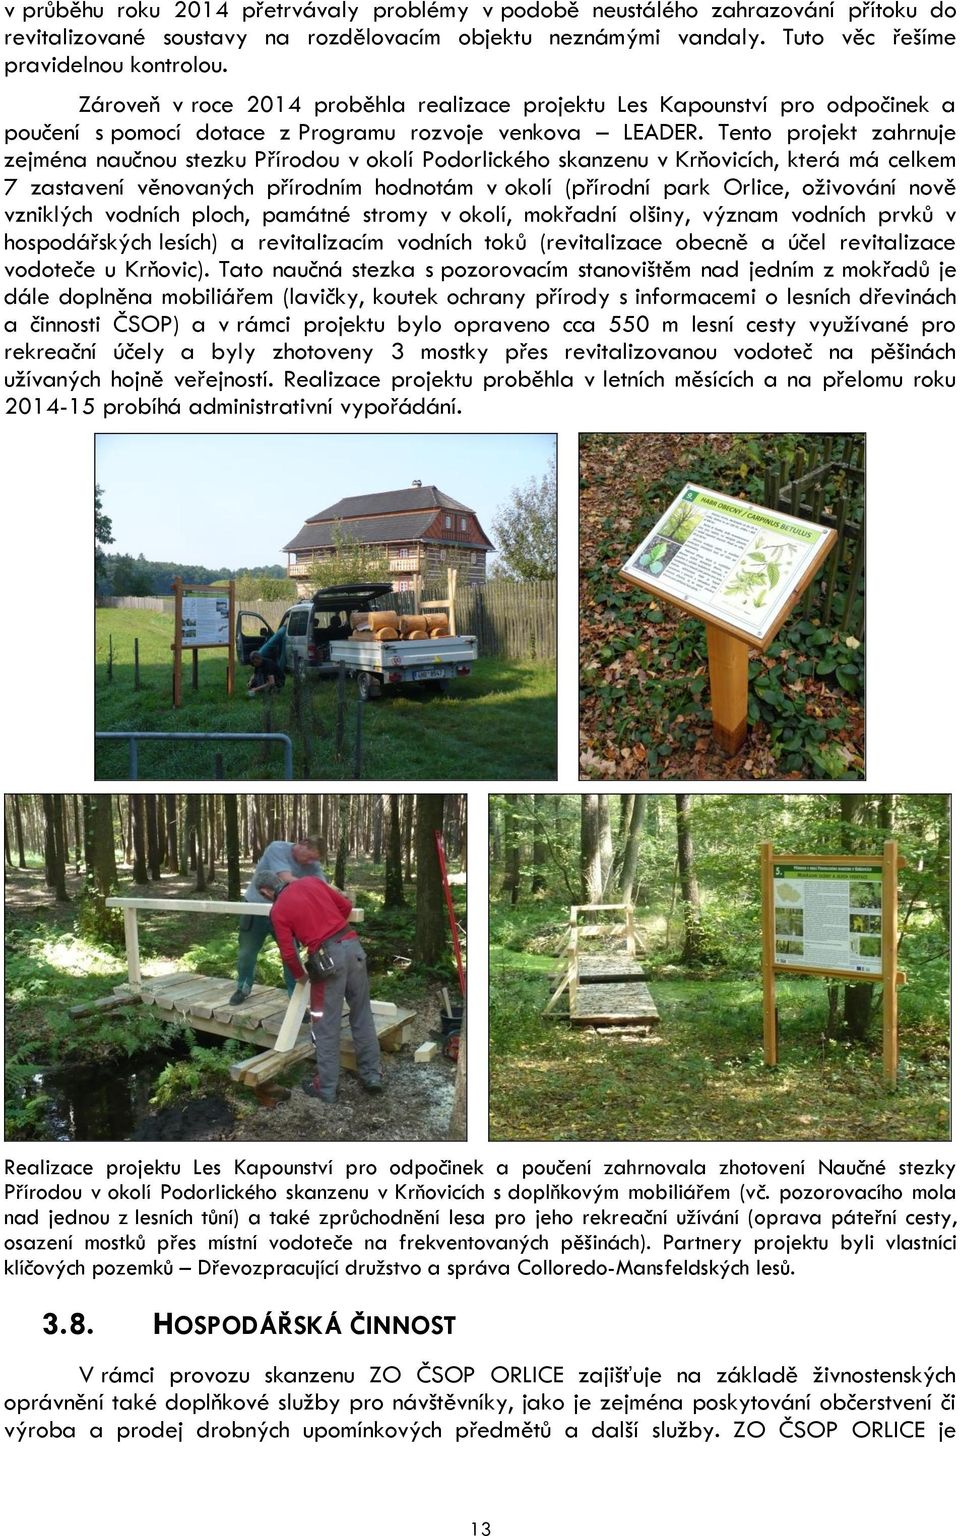 Tento projekt zahrnuje zejména naučnou stezku Přírodou v okolí Podorlického skanzenu v Krňovicích, která má celkem 7 zastavení věnovaných přírodním hodnotám v okolí (přírodní park Orlice, oživování